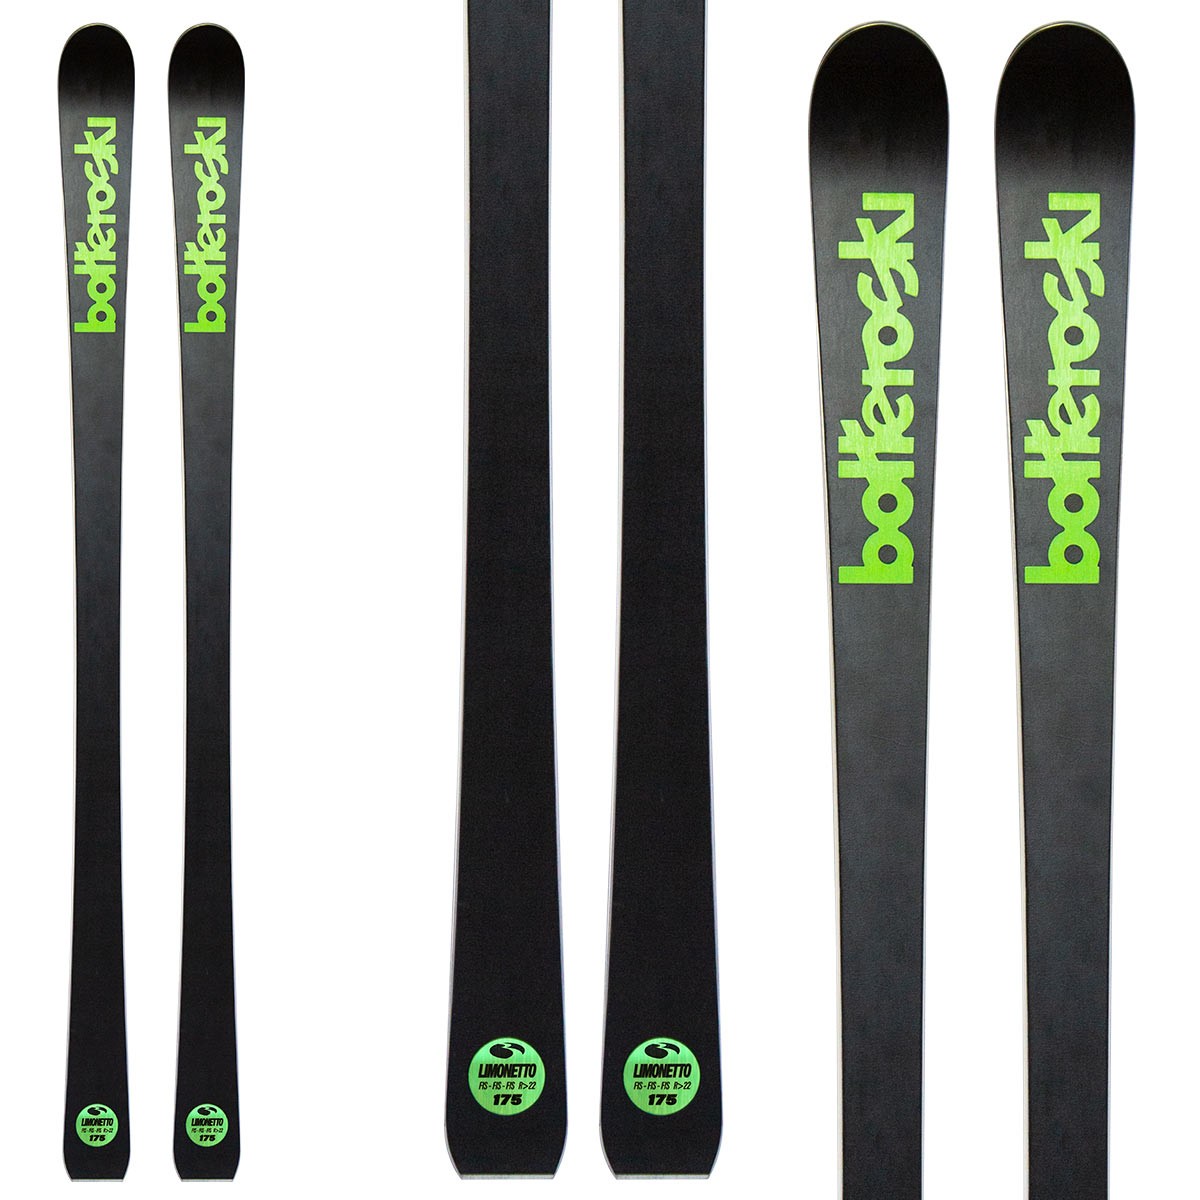  Sci Bottero Ski Limonetto con attacchi V412 con piastra WC Race Duo V10 (Colore: nero-verde, Taglia: 130) 